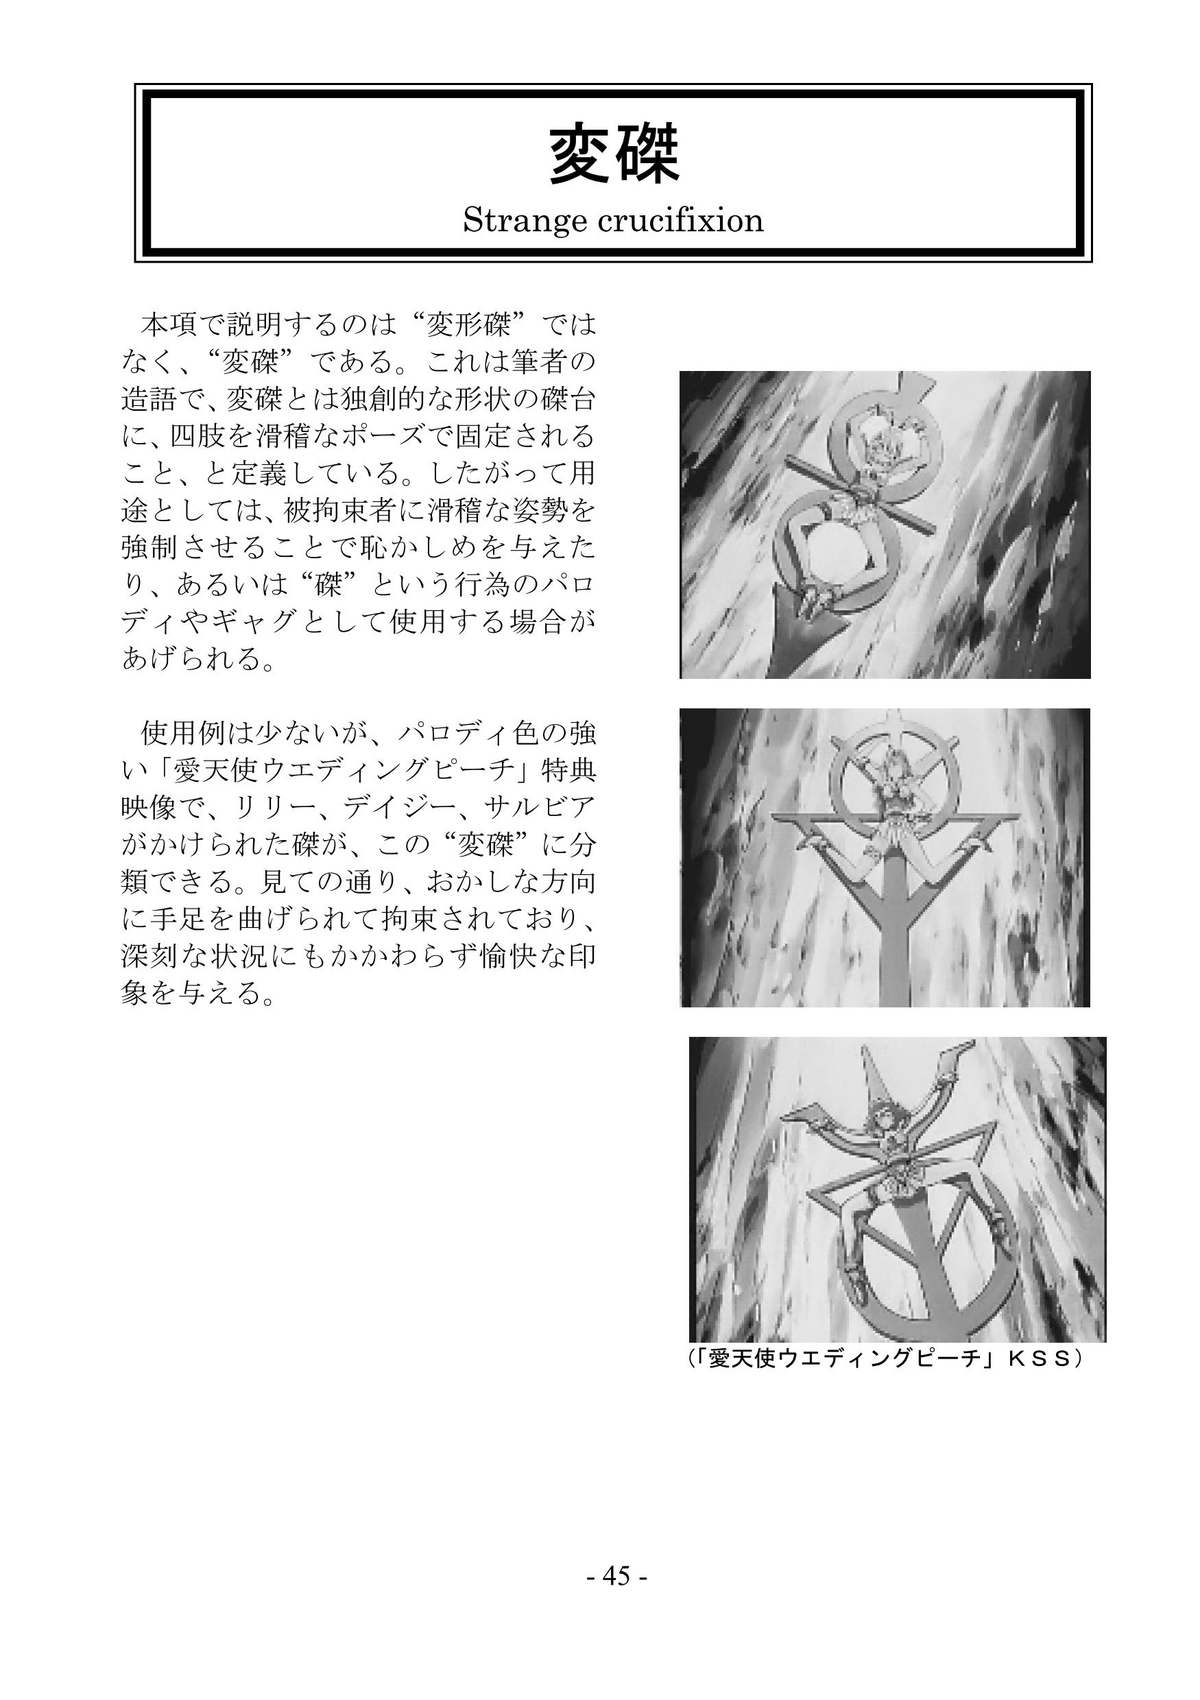 [さんかく同盟] encyclopedia of crucifixion